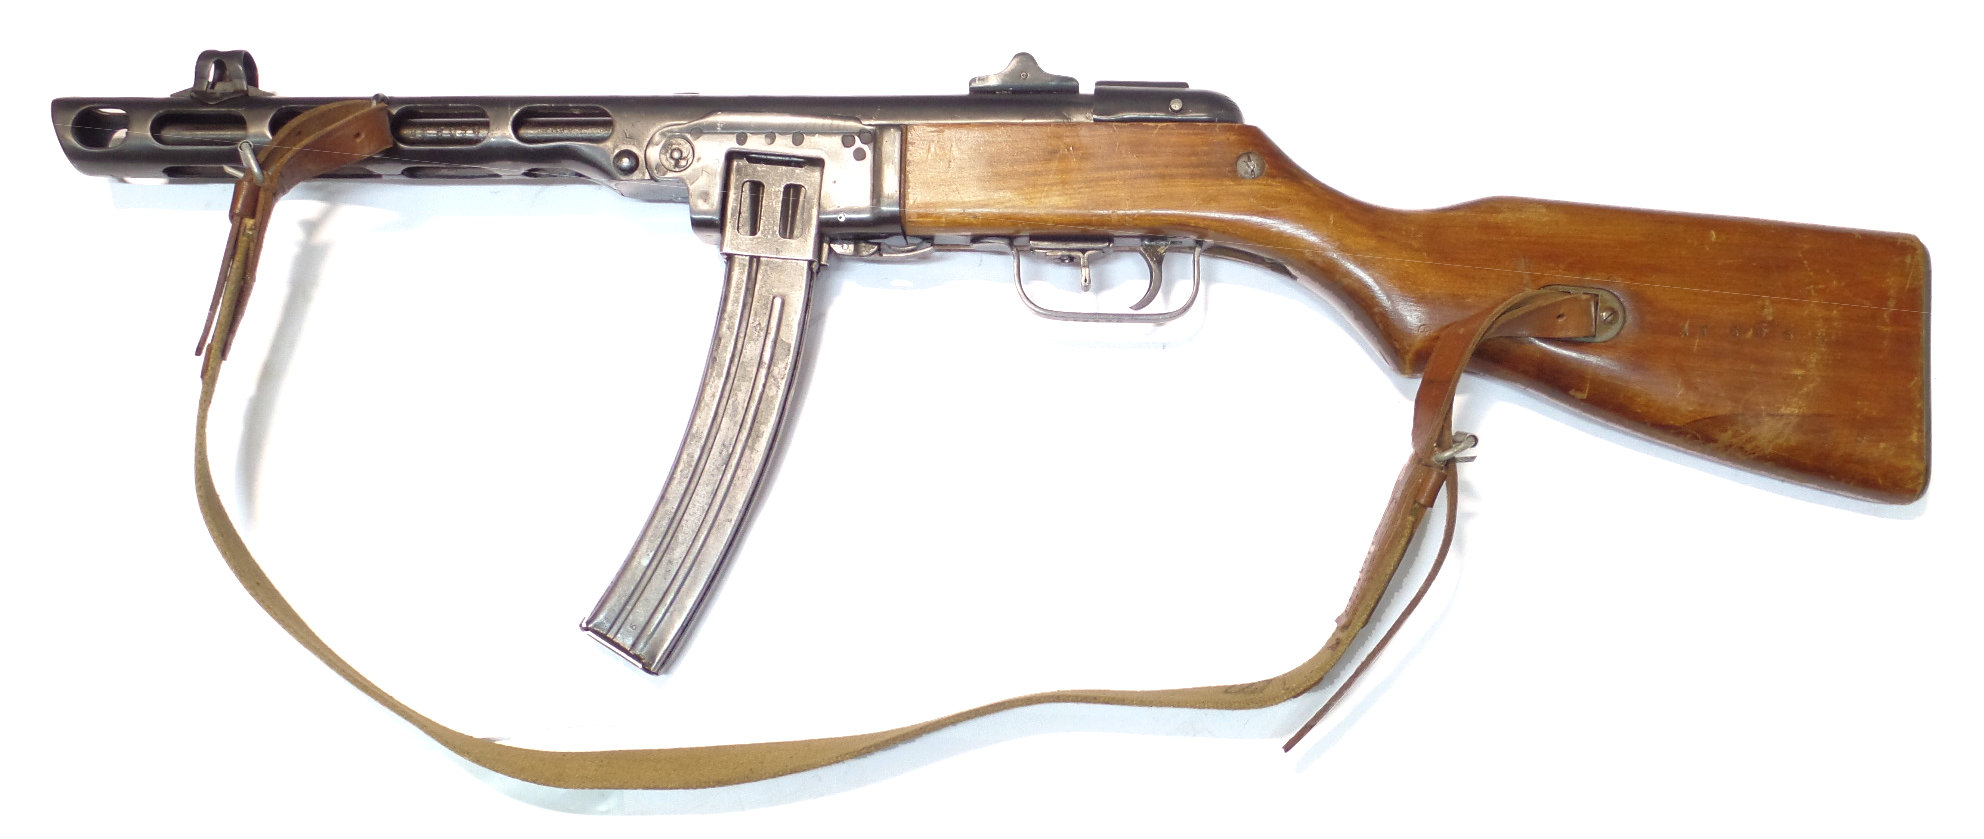 PPSh-41 calibre 7.62Tokarev